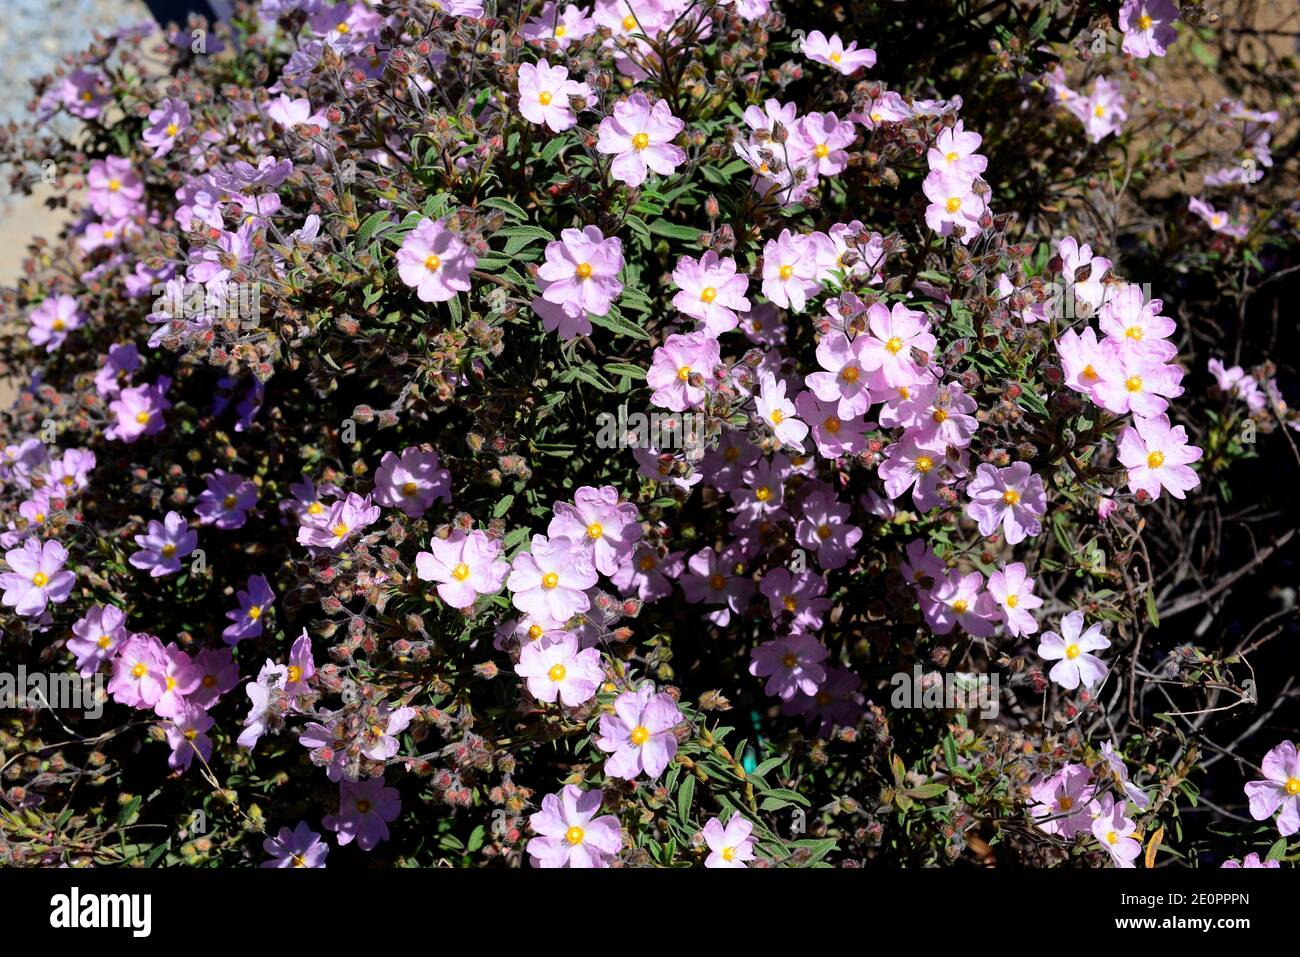 Crete rockrose (Cistus parviflorus) is a shrub endemic to Crete Island. Stock Photo